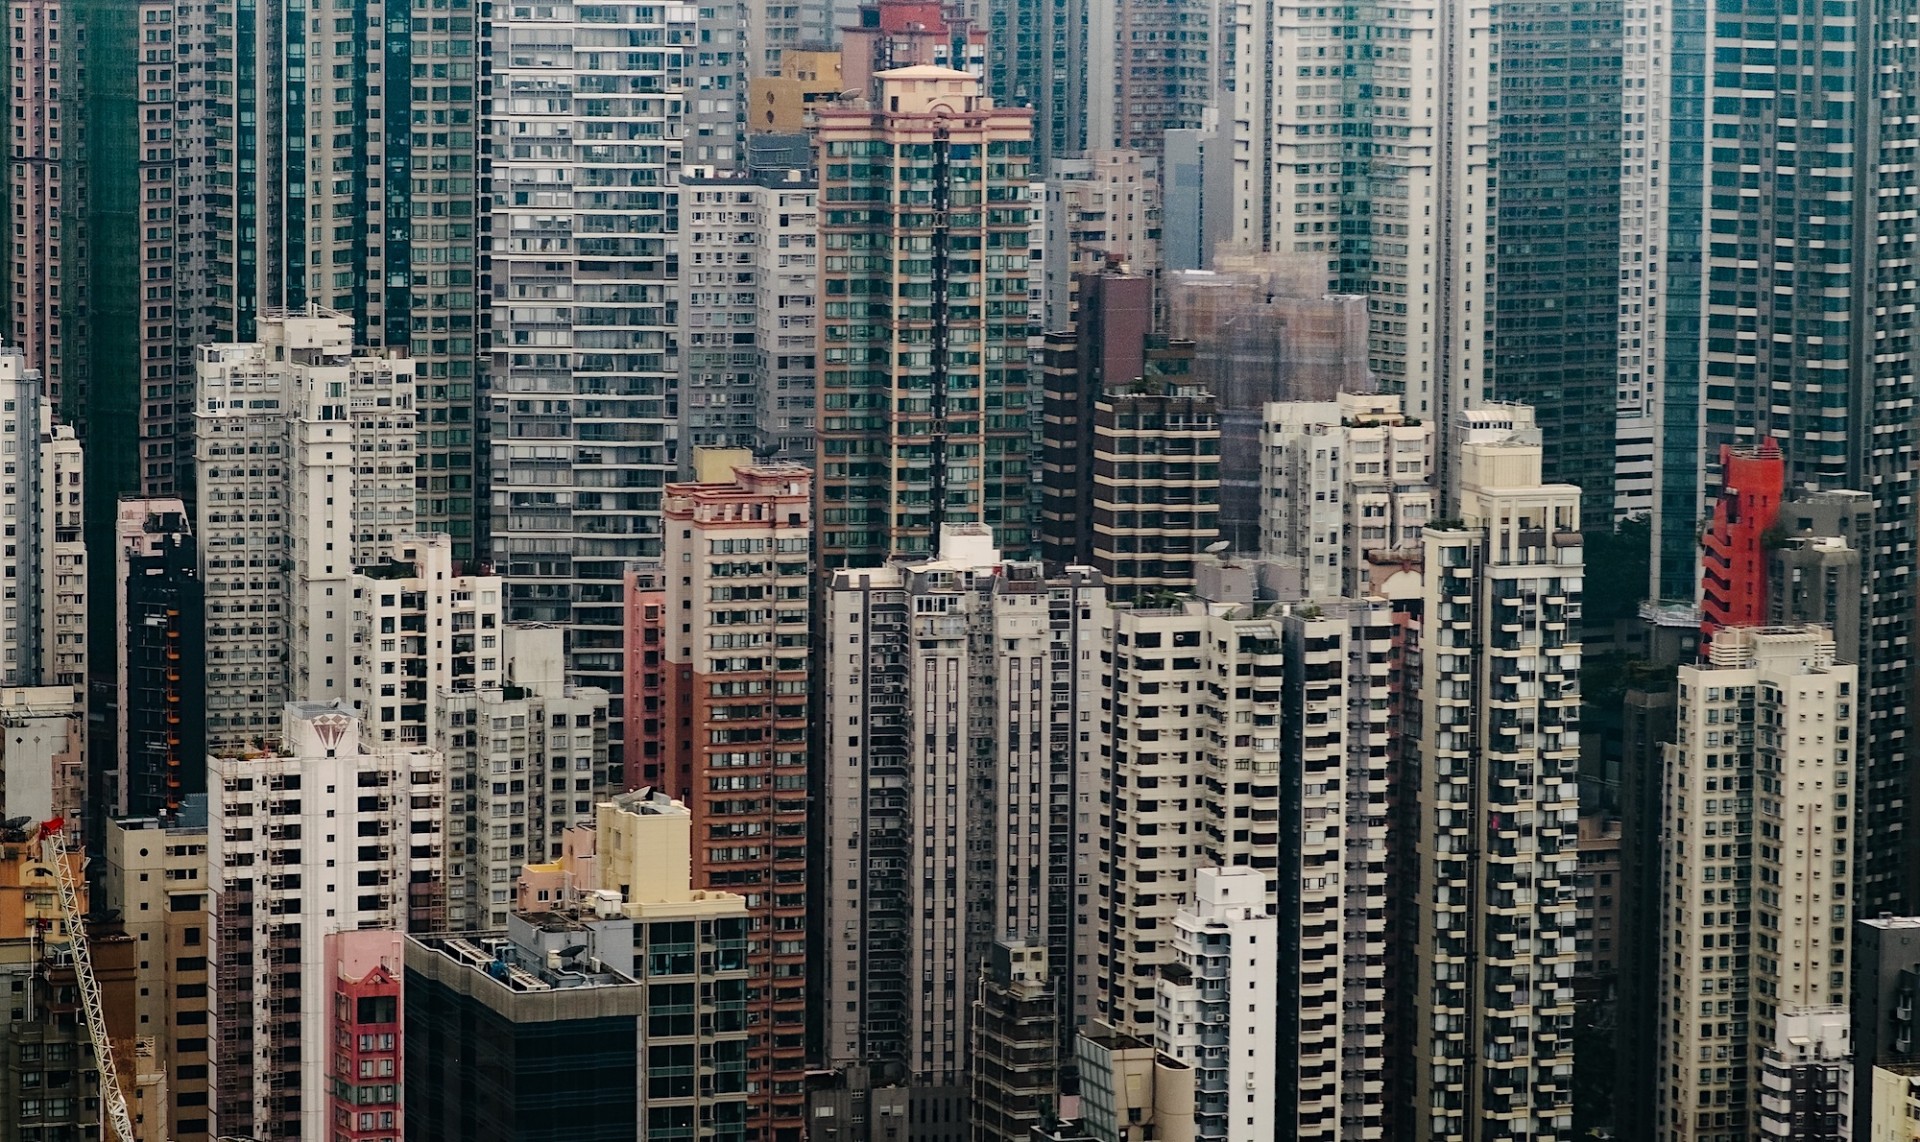 Buildings in Hong Kong